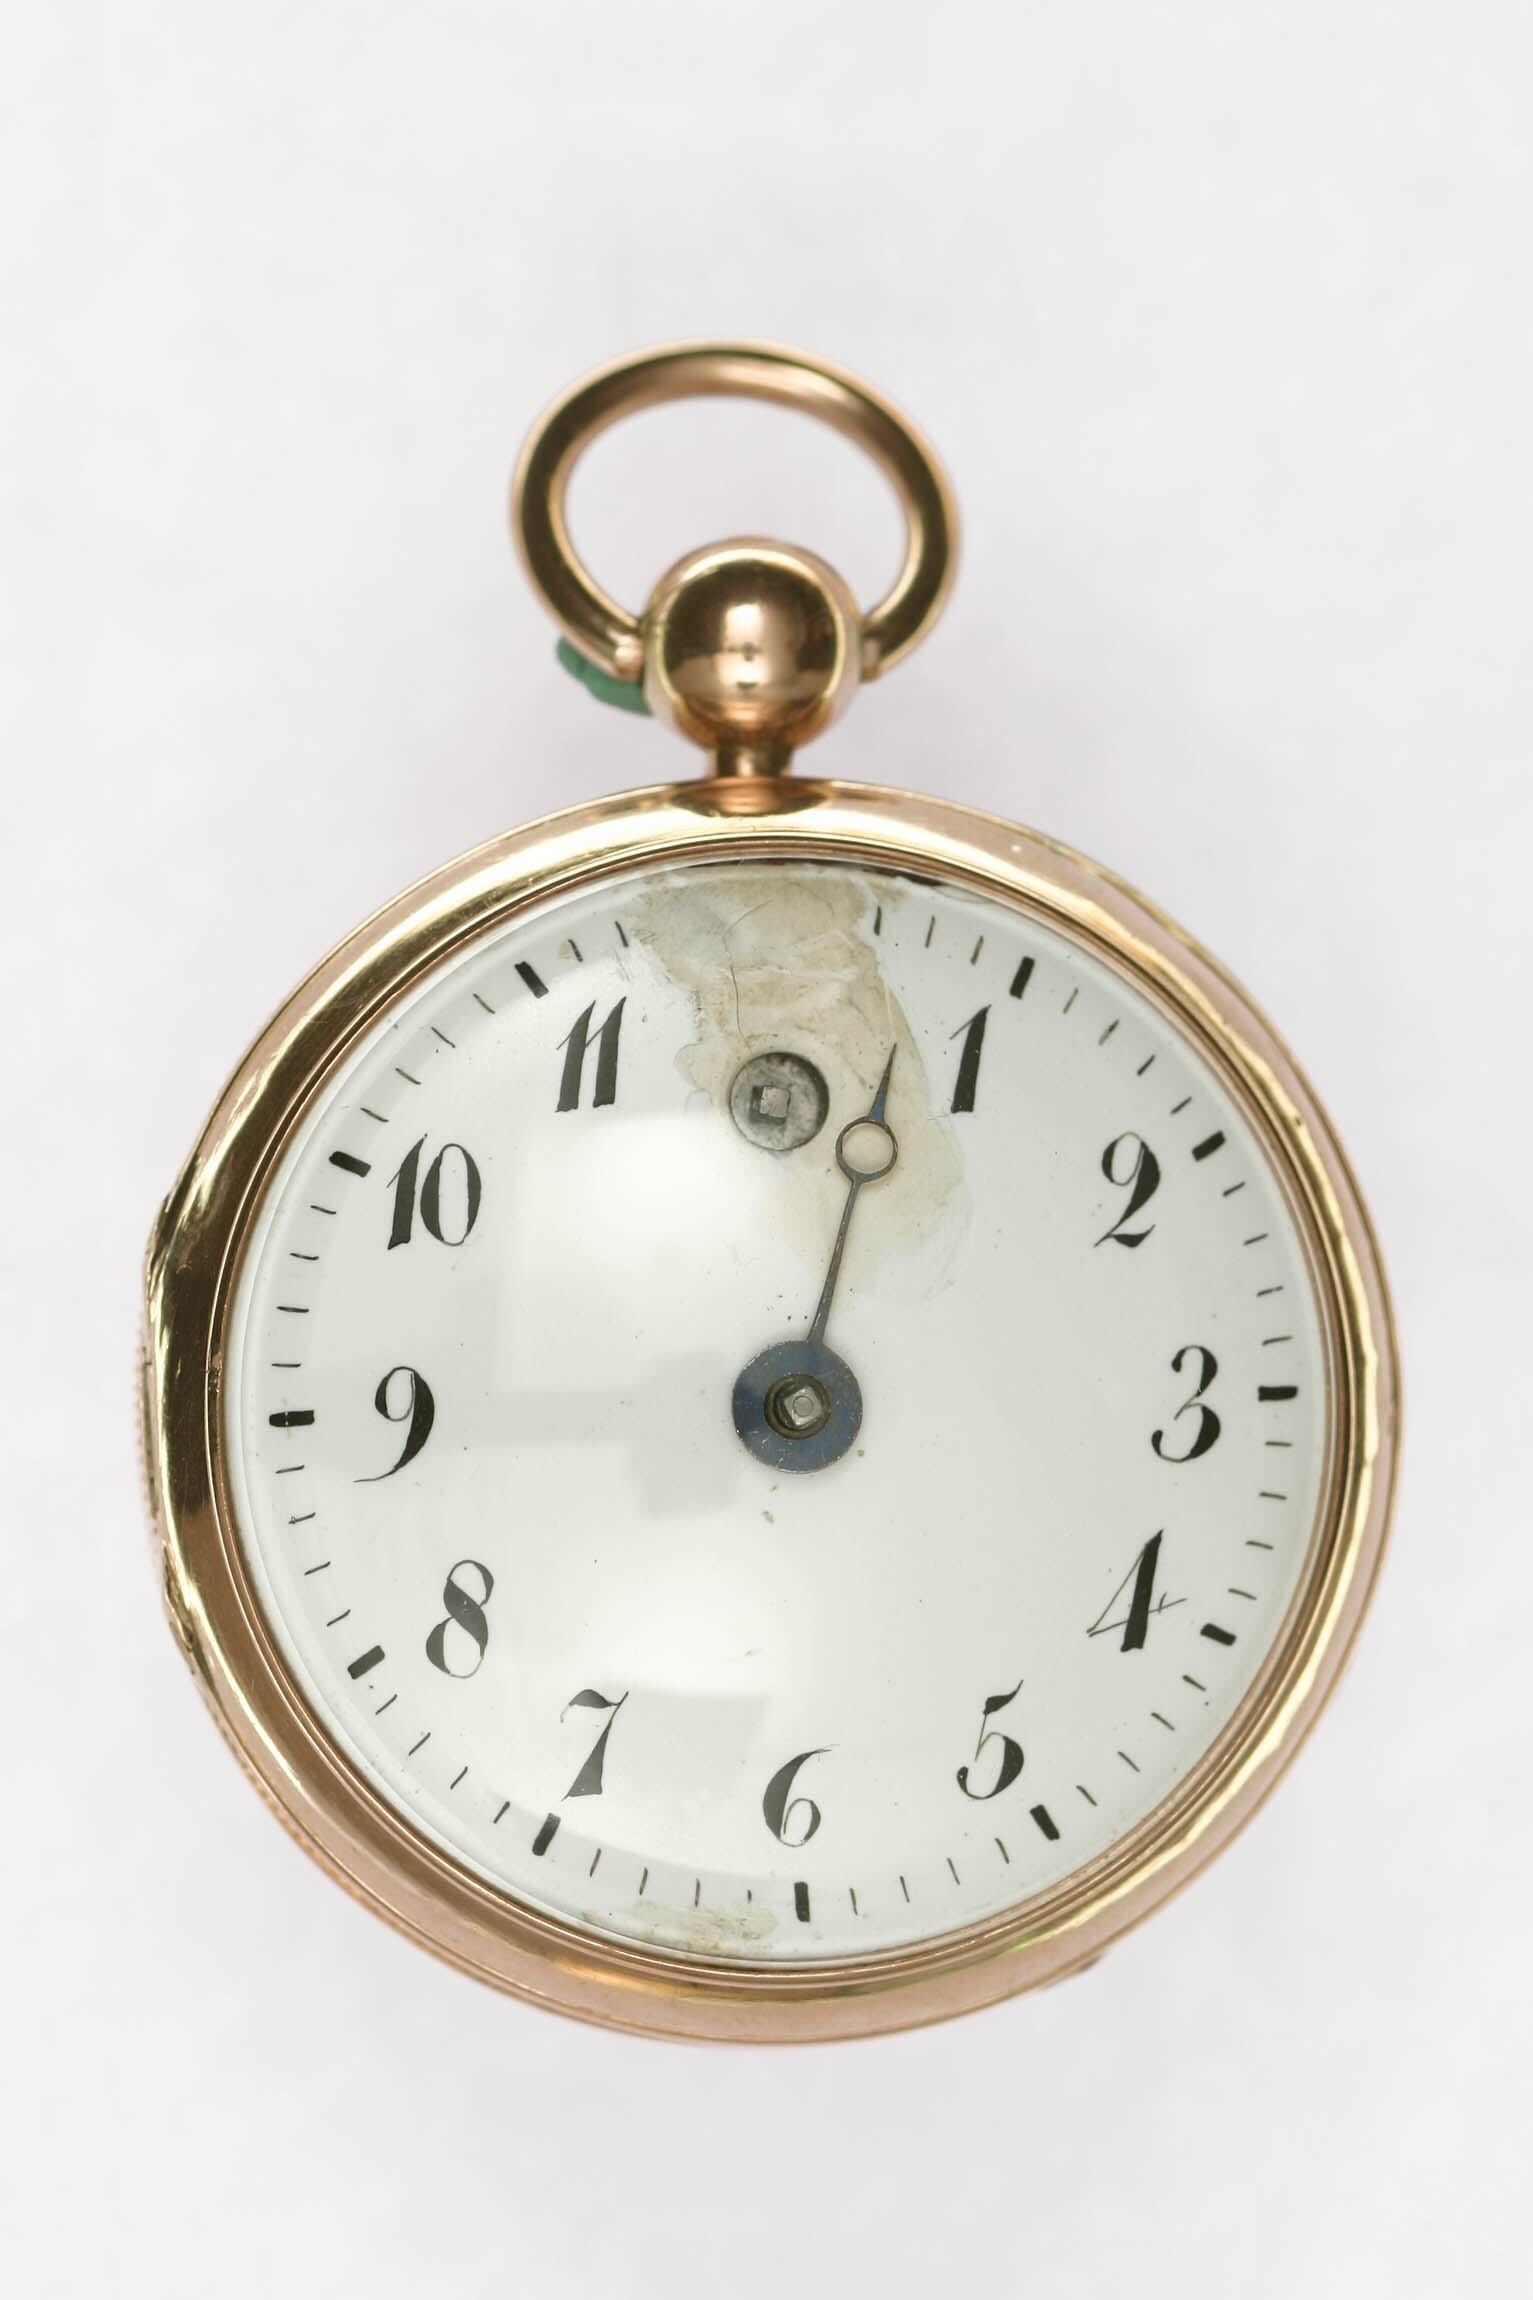 Taschenuhr mit Scheinpendel, um 1800 (Deutsches Uhrenmuseum CC BY-SA)